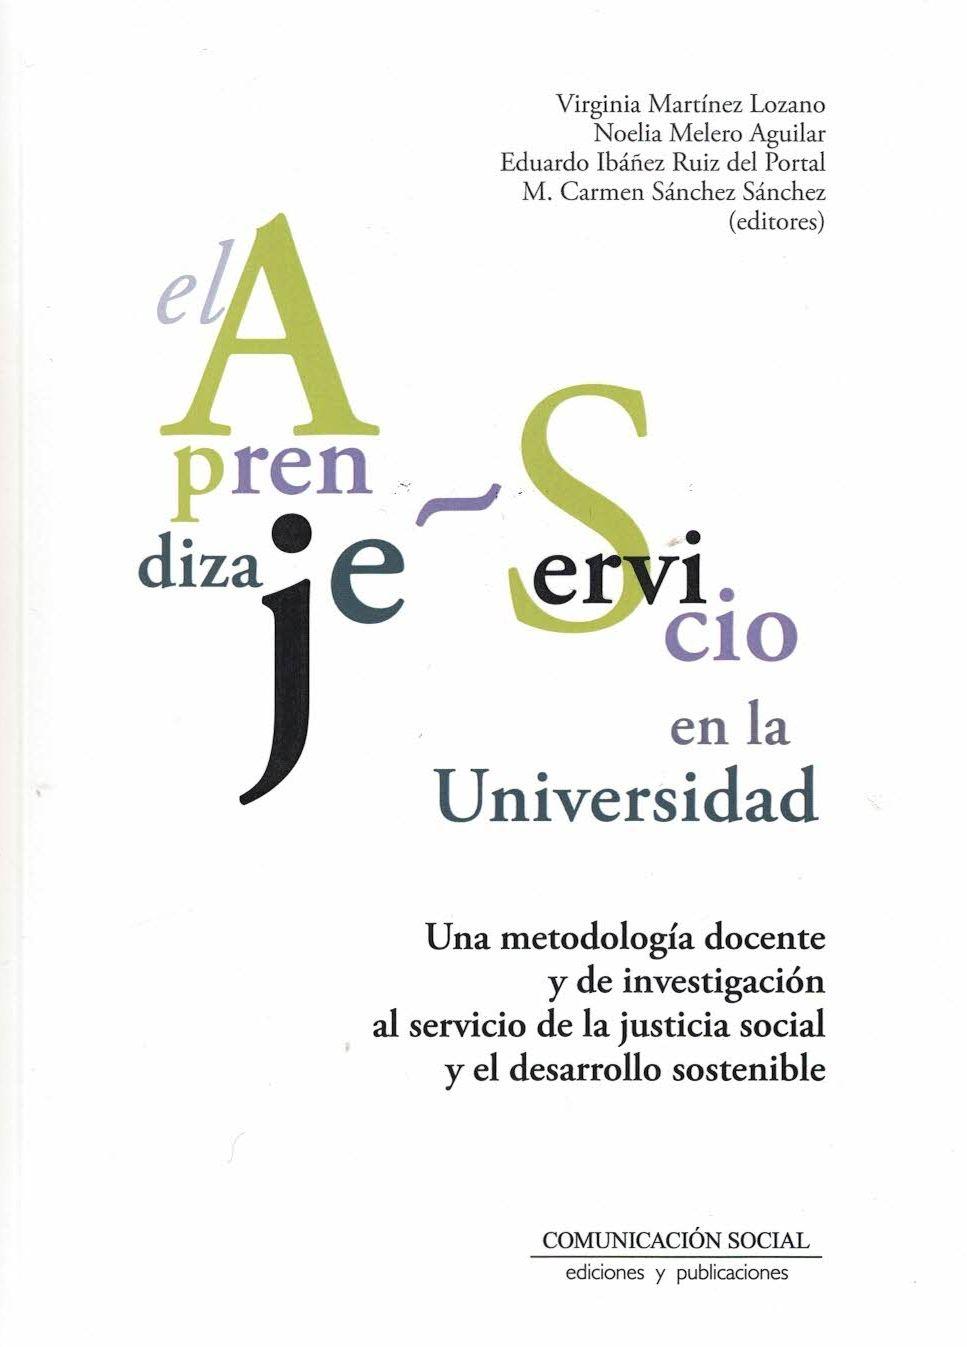 Imagen de portada del libro Aprendizaje - Servicio en la Universidad